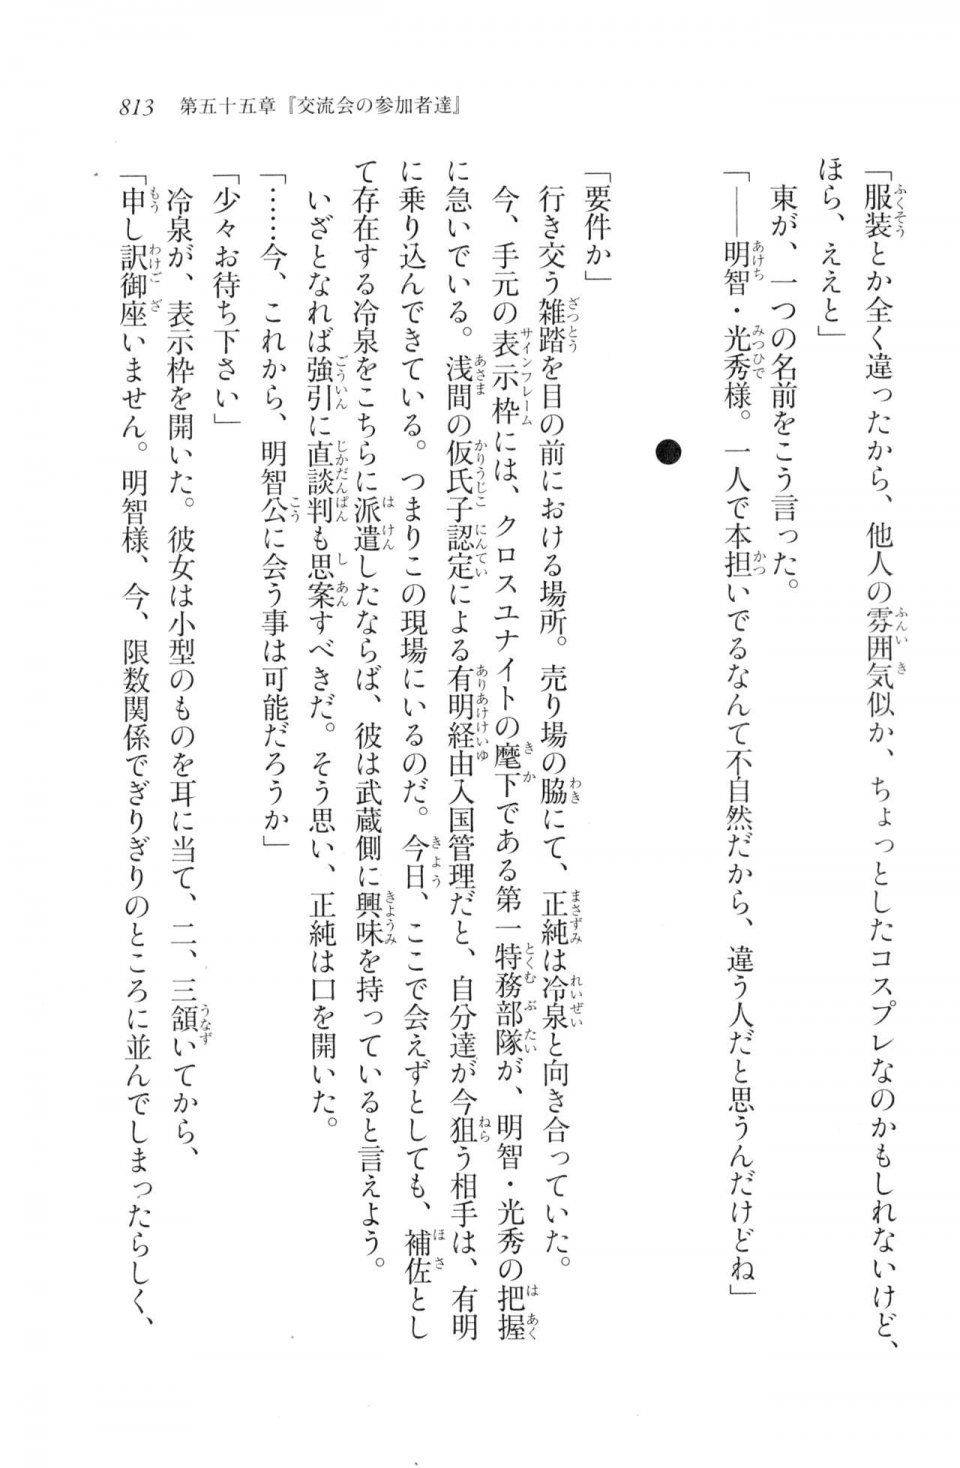 Kyoukai Senjou no Horizon LN Vol 20(8B) - Photo #813